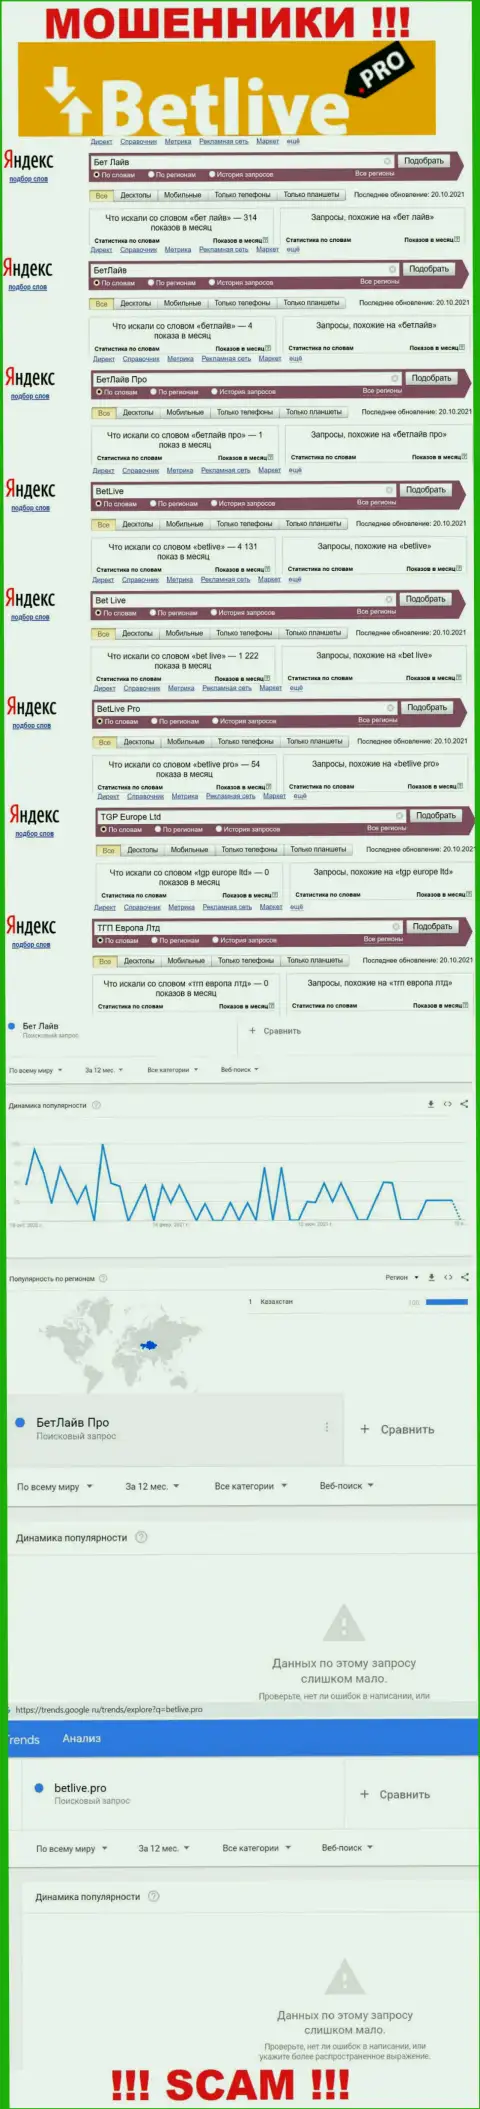 Статистические показатели о запросах в поисковиках глобальной сети интернет данных о компании BetLive